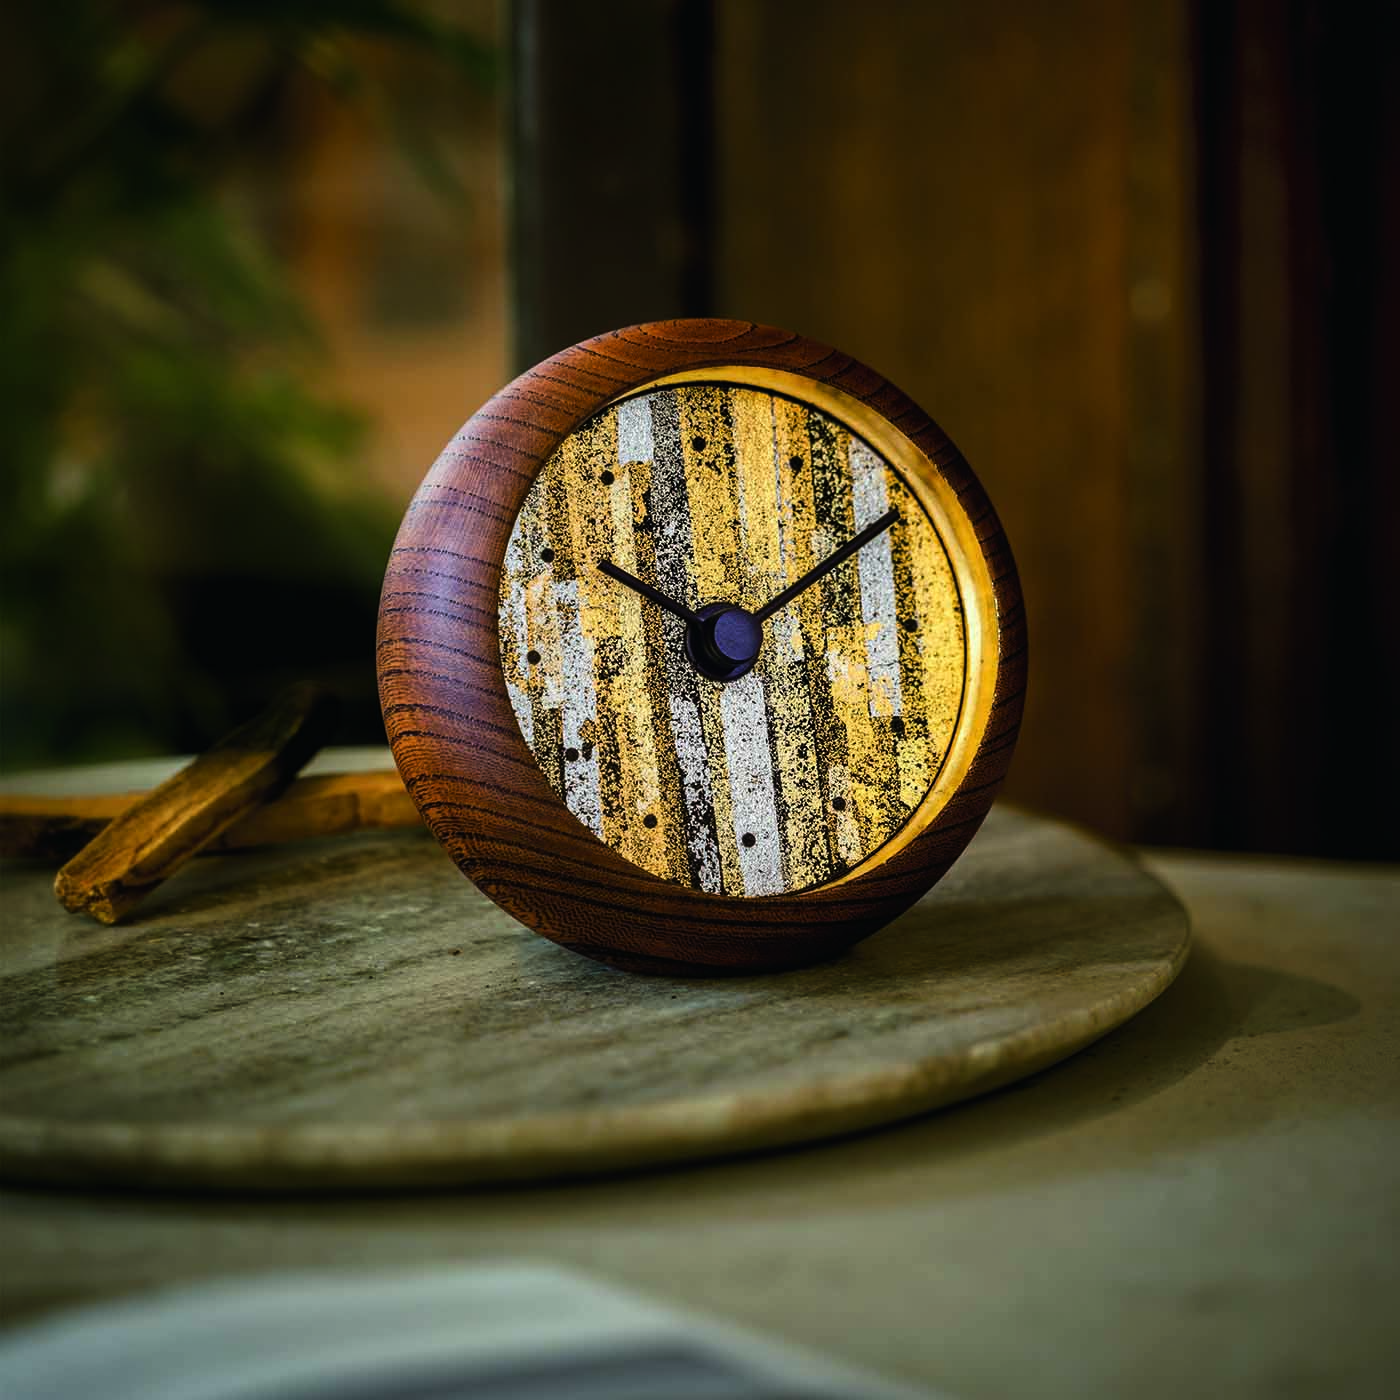 フェリシモメリー|【夢くじ】金沢の時計職人が作った 侘び寂びに見惚れる 縁付金箔とプラチナ箔で彩った 欅の置時計|加賀百万石の城下町・金沢にある時計工房のアートディレクターで、日本画家でもある牛島孝さんに、日本職人プロジェクトが「絵画のような魅力を秘めた置時計を」と、リクエストして生まれた特別な逸品。